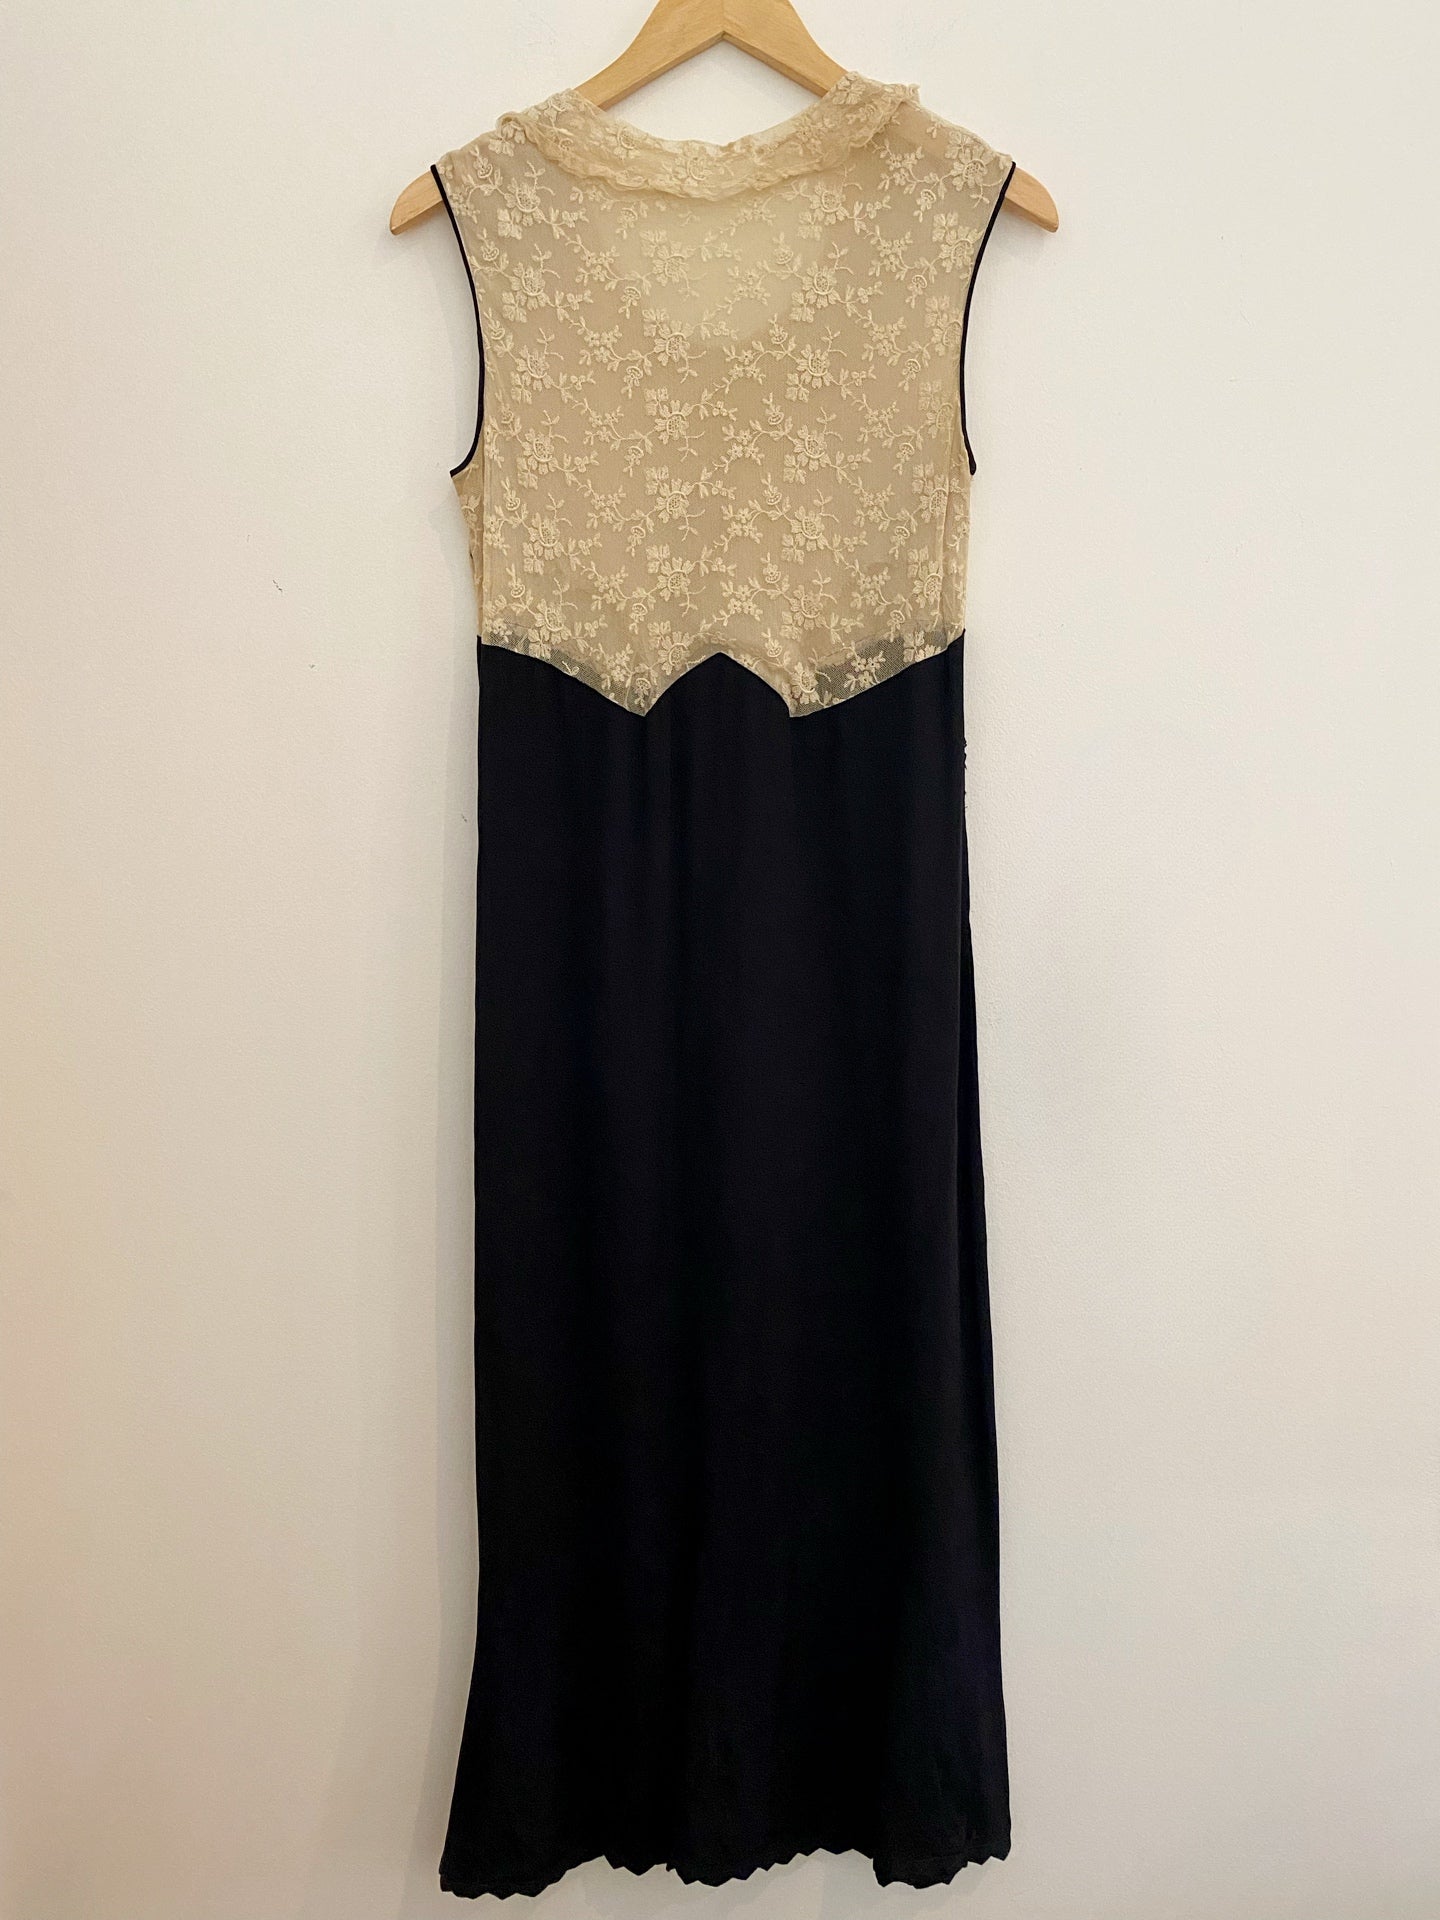 1930s Black Rayon + Ecru Lace Dress- S/M